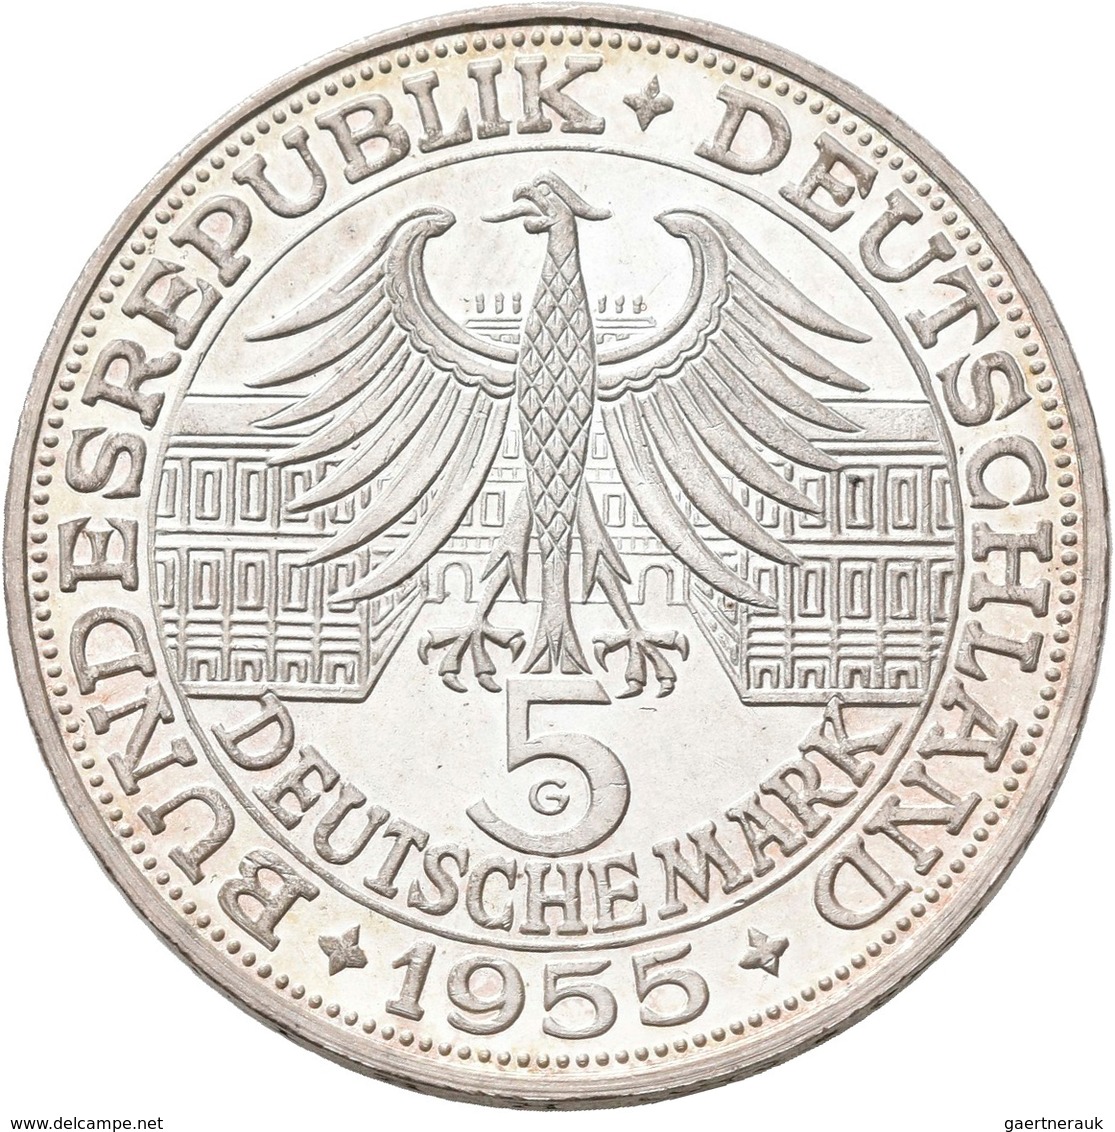 Bundesrepublik Deutschland 1948-2001: Die ersten Vier. Von 5 DM Germanisches Museum, J. 388 bis 5 DM